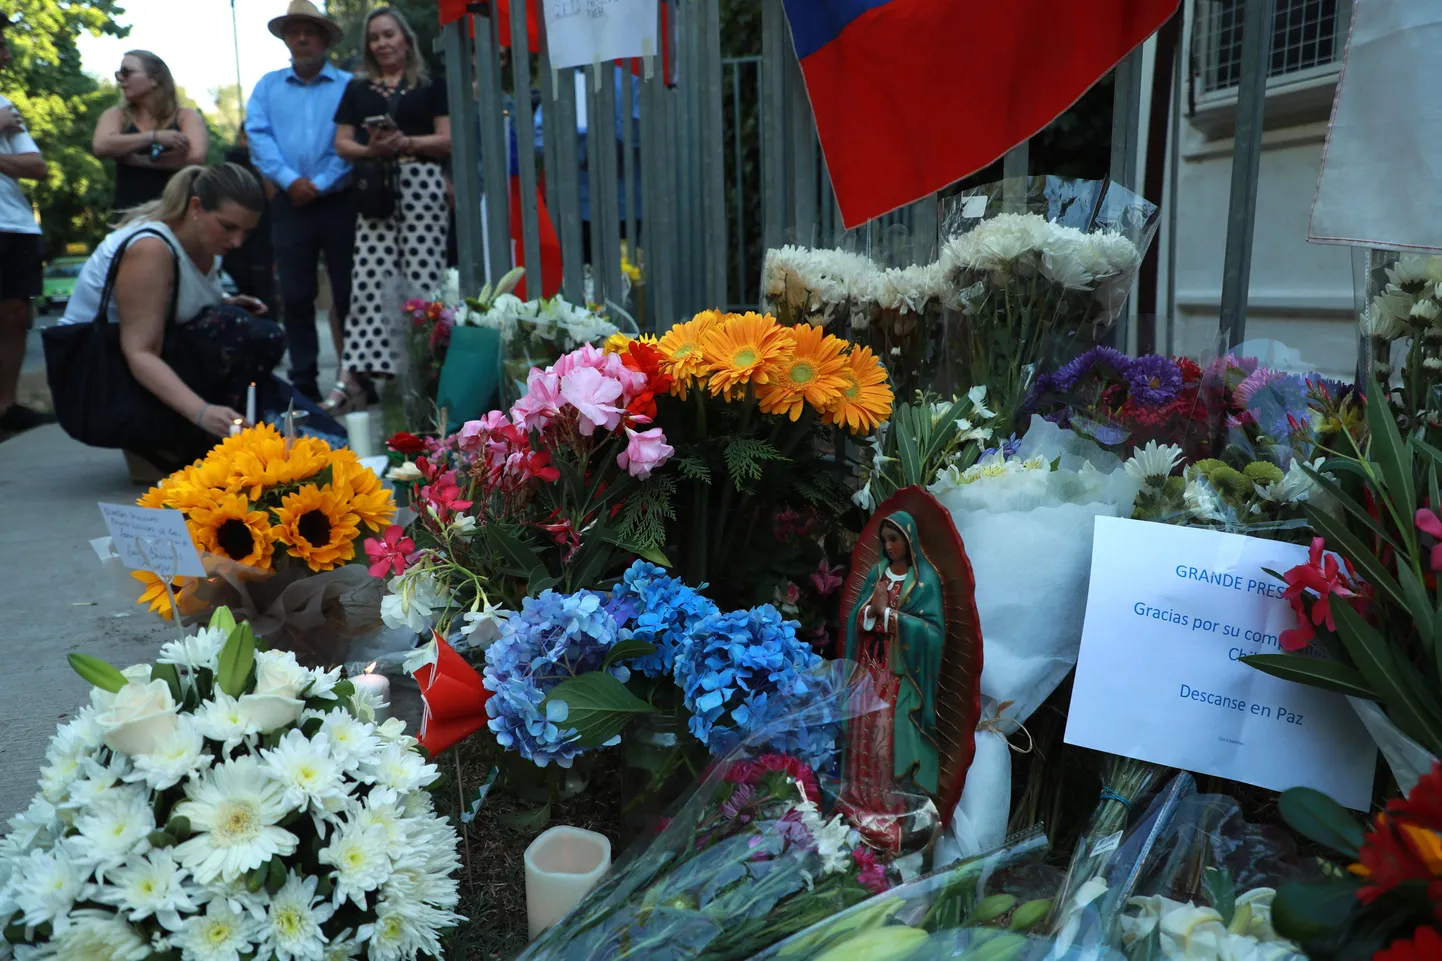 Leinajad toomas lilli kopteriõnnetuses hukkunud Tšiili ekspresidendi Sebastian Piñera kodu juurde.